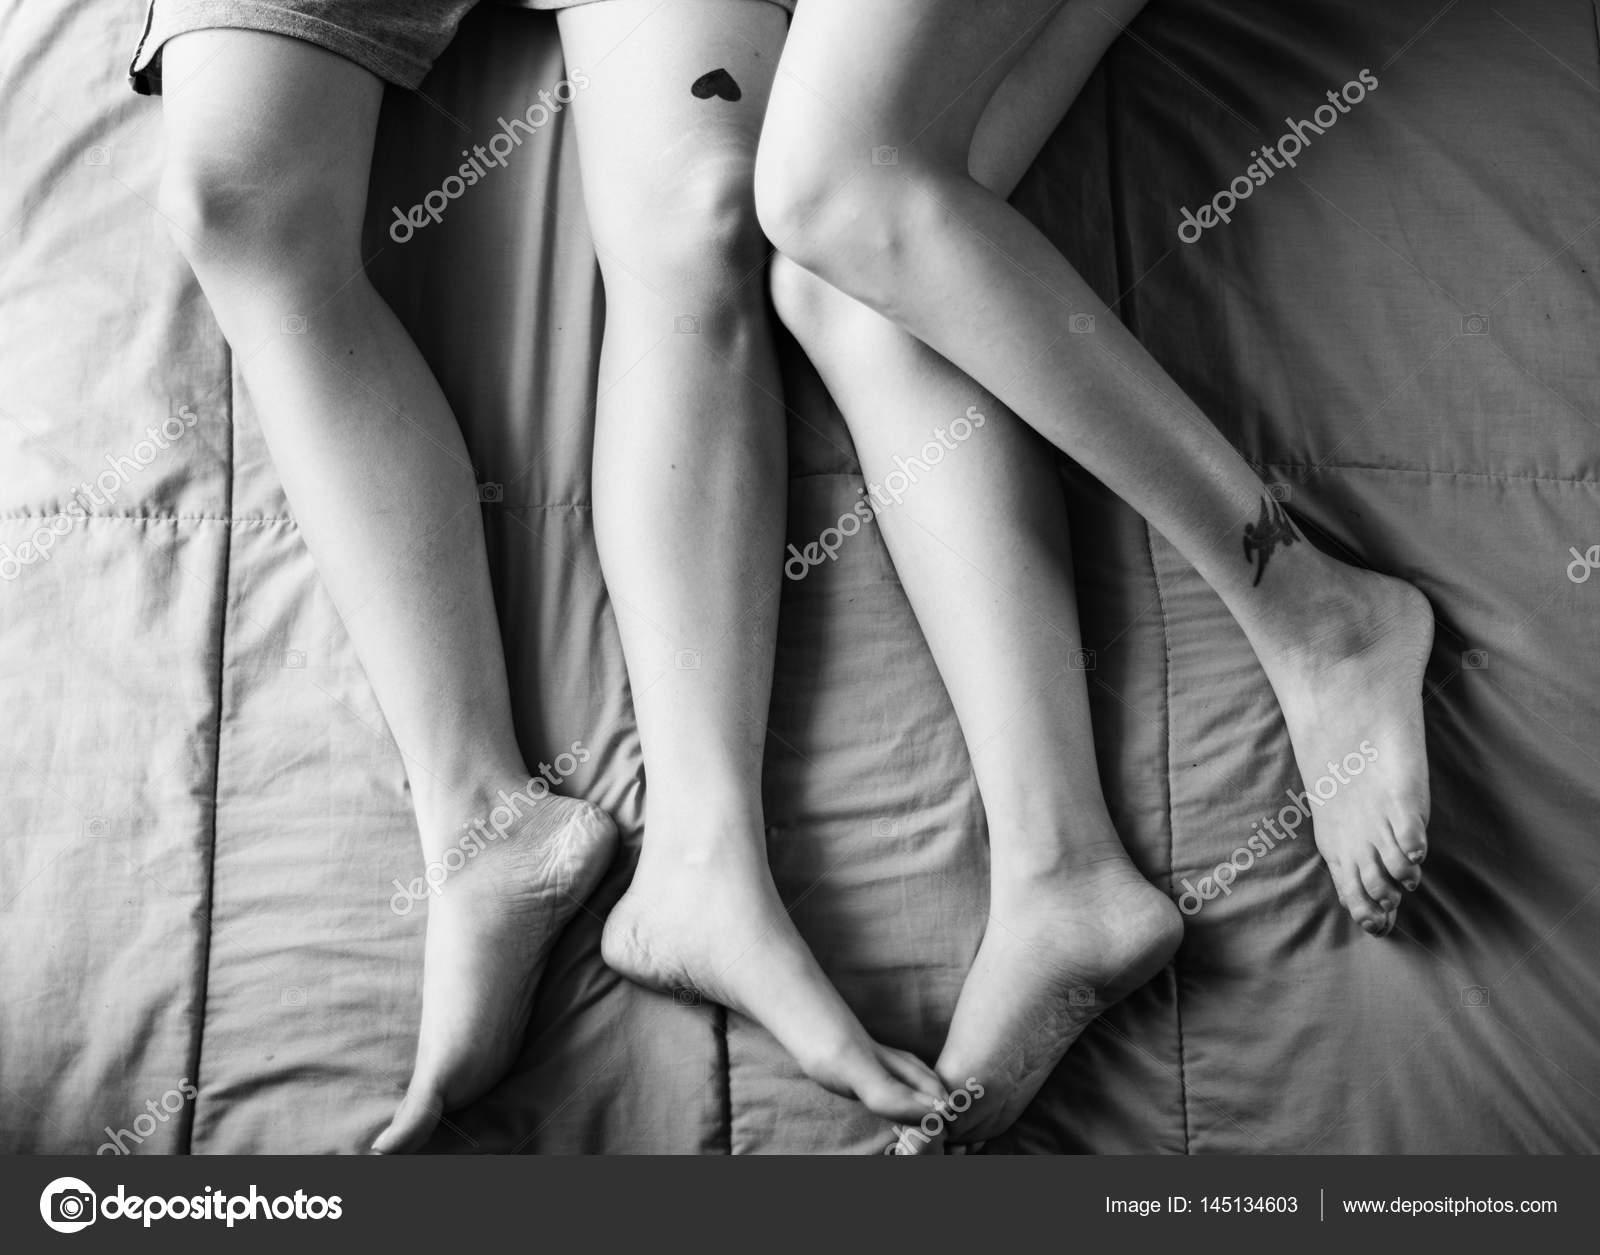 Black lesbians on bed